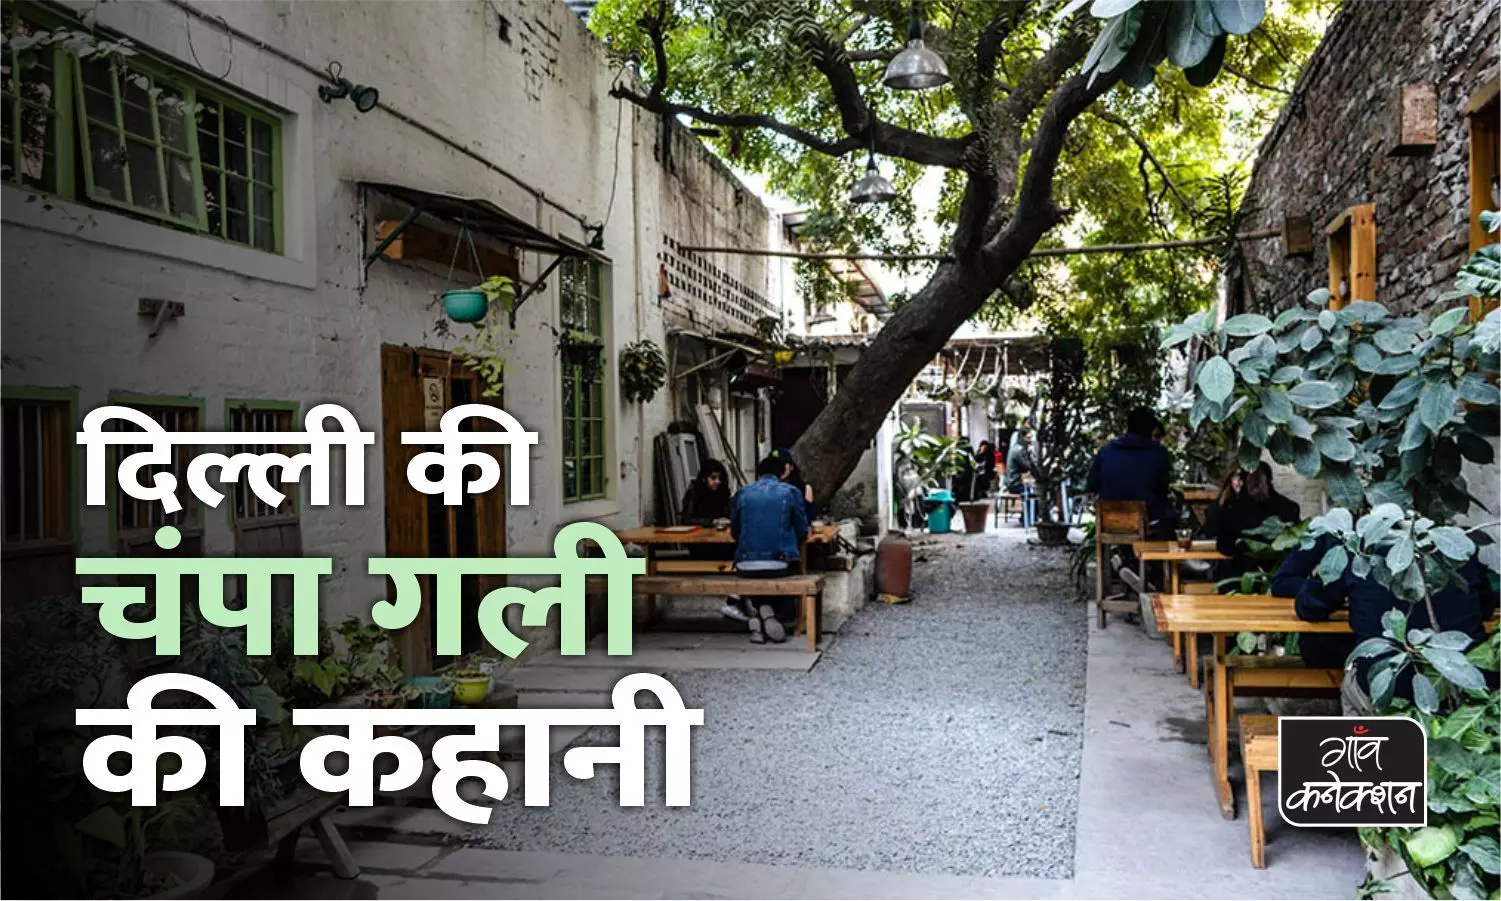 World Tourism Day: दिल्ली की चंपा गली के बारे में क्या कभी आपने सुना है?